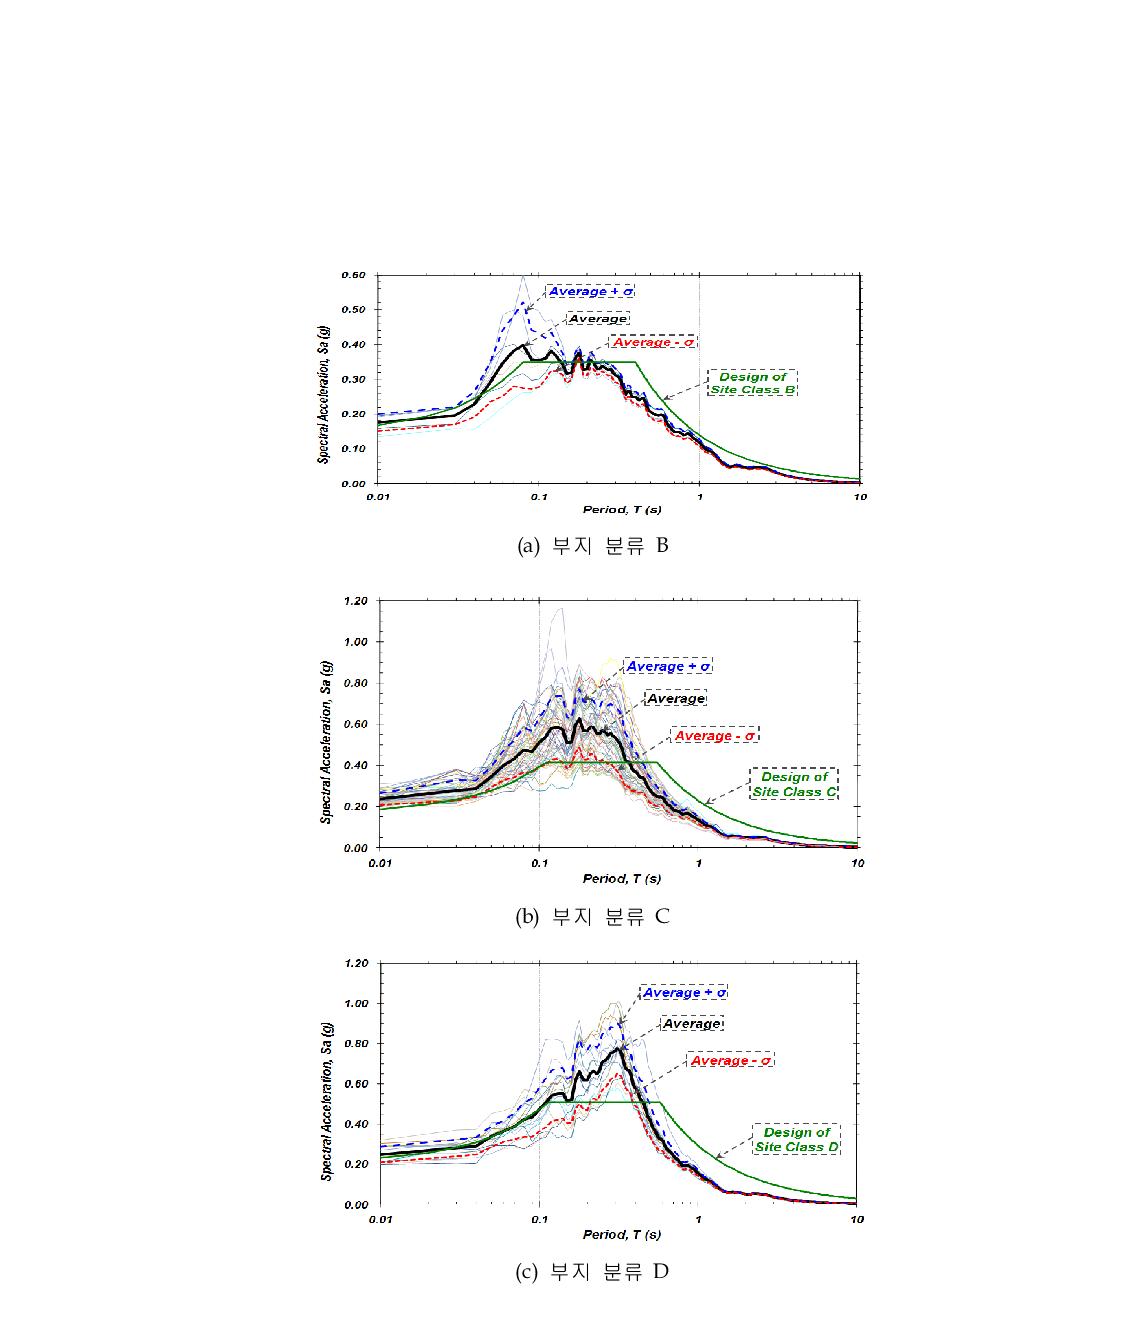 부지 분류 B, C와 D의 CLE 수준 지표면 평균 응답 스펙트럼